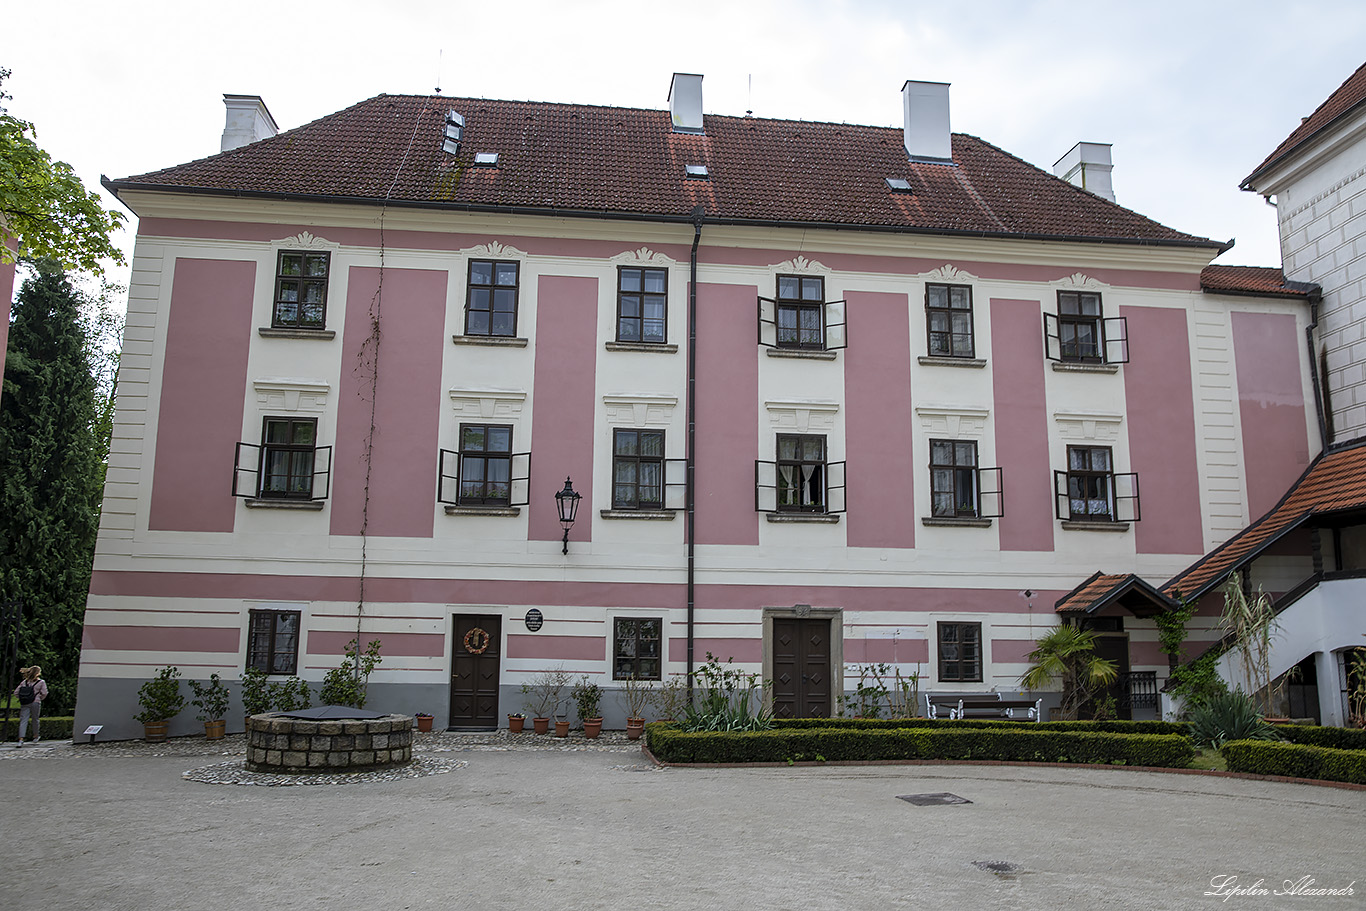 Замок Тршебонь (Zámek Třeboň) - Тршебонь (Třeboň) - Чехия (Czech Republic)